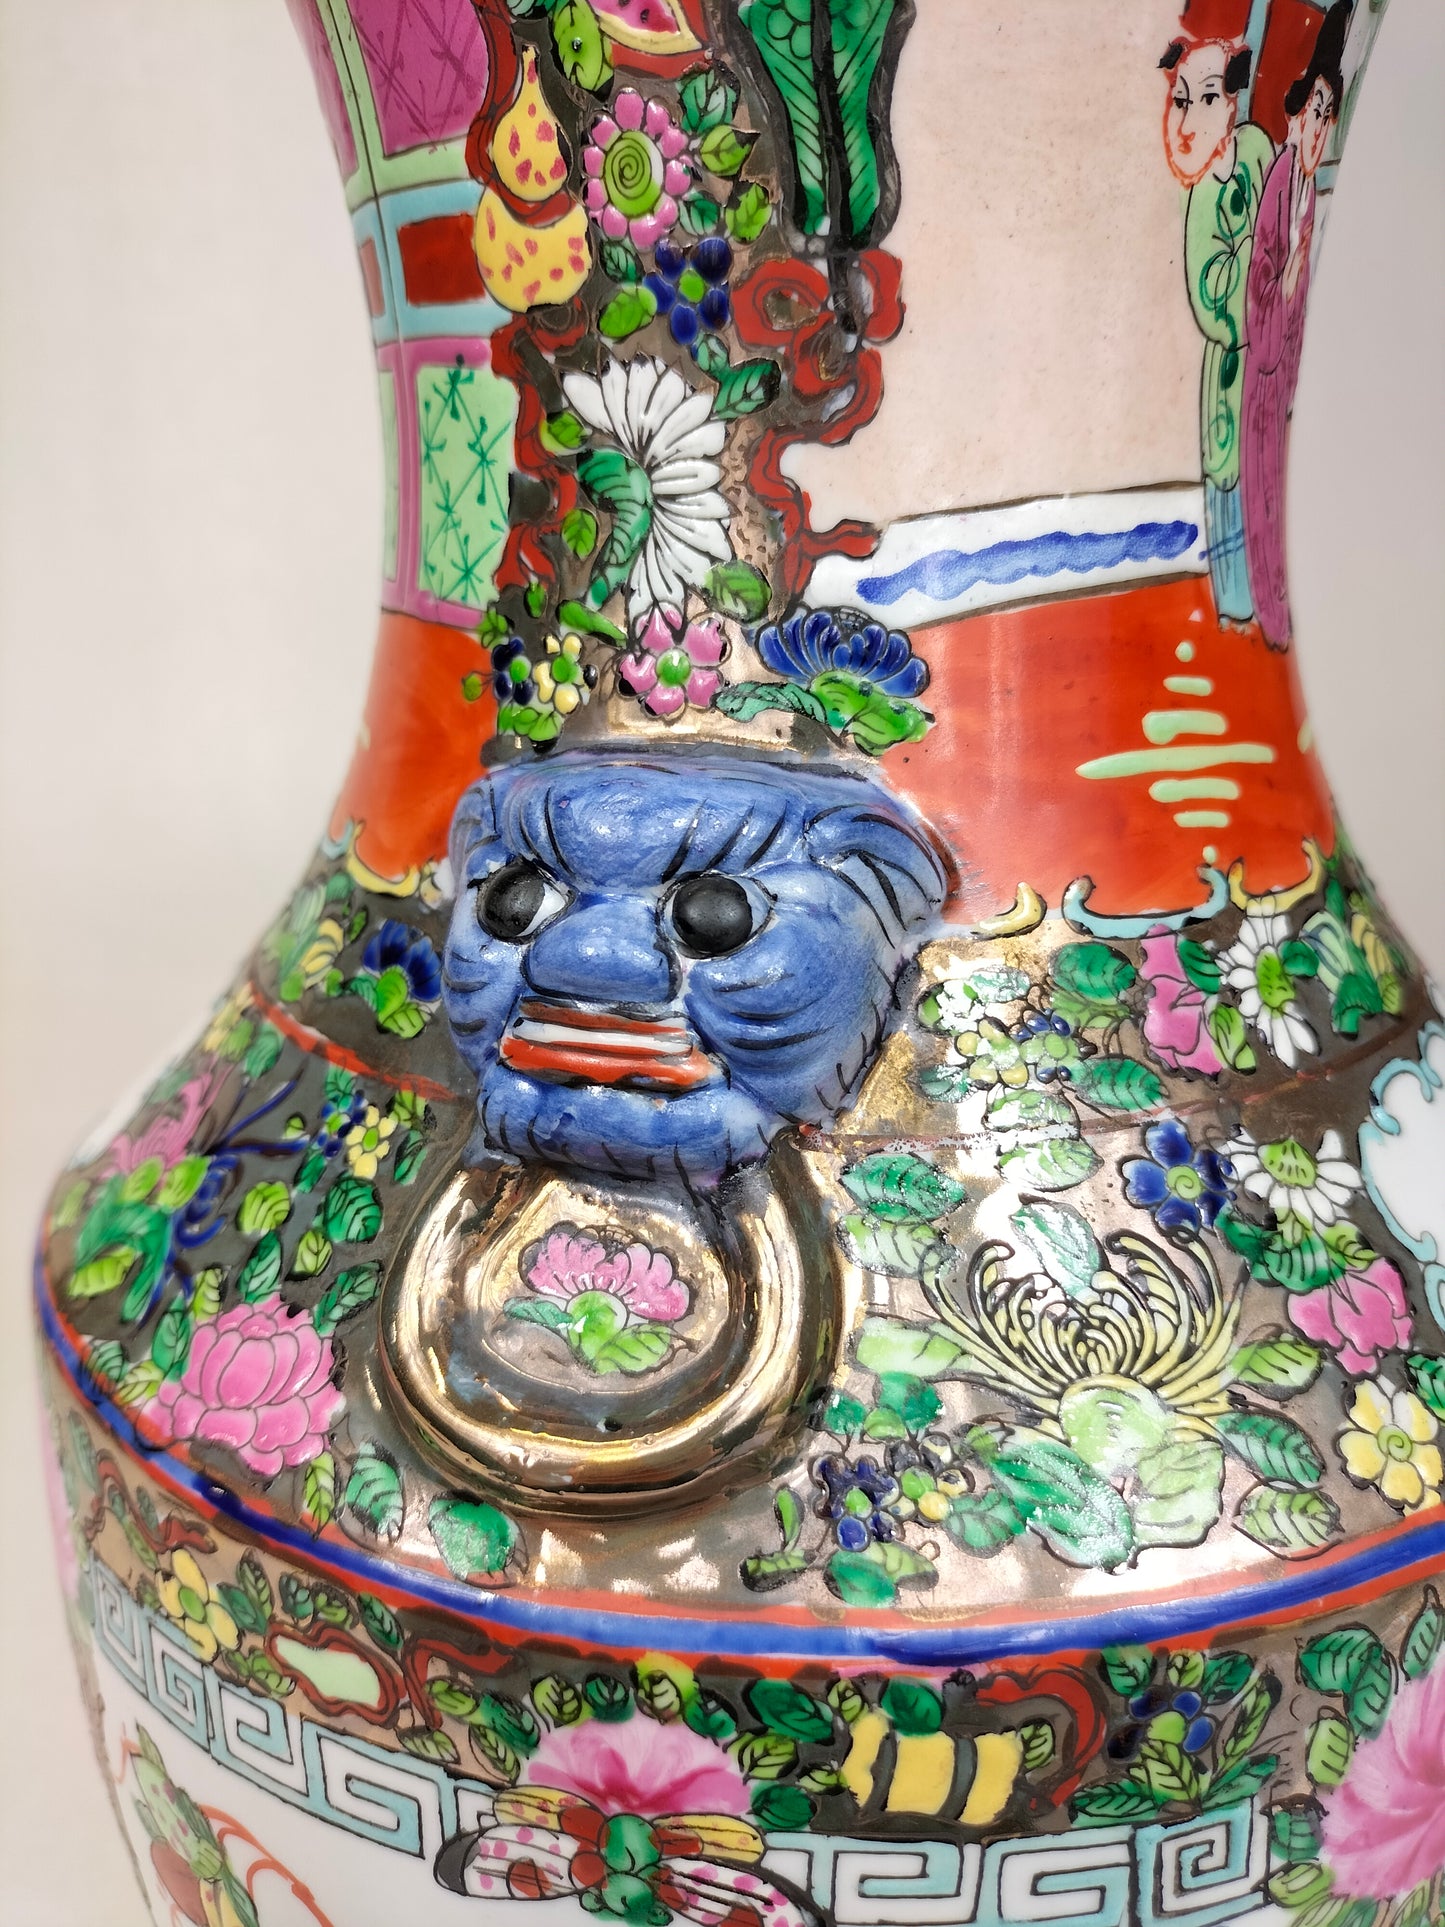 Vase médaillon rose canton chinois // Milieu du 20e siècle - années 1960